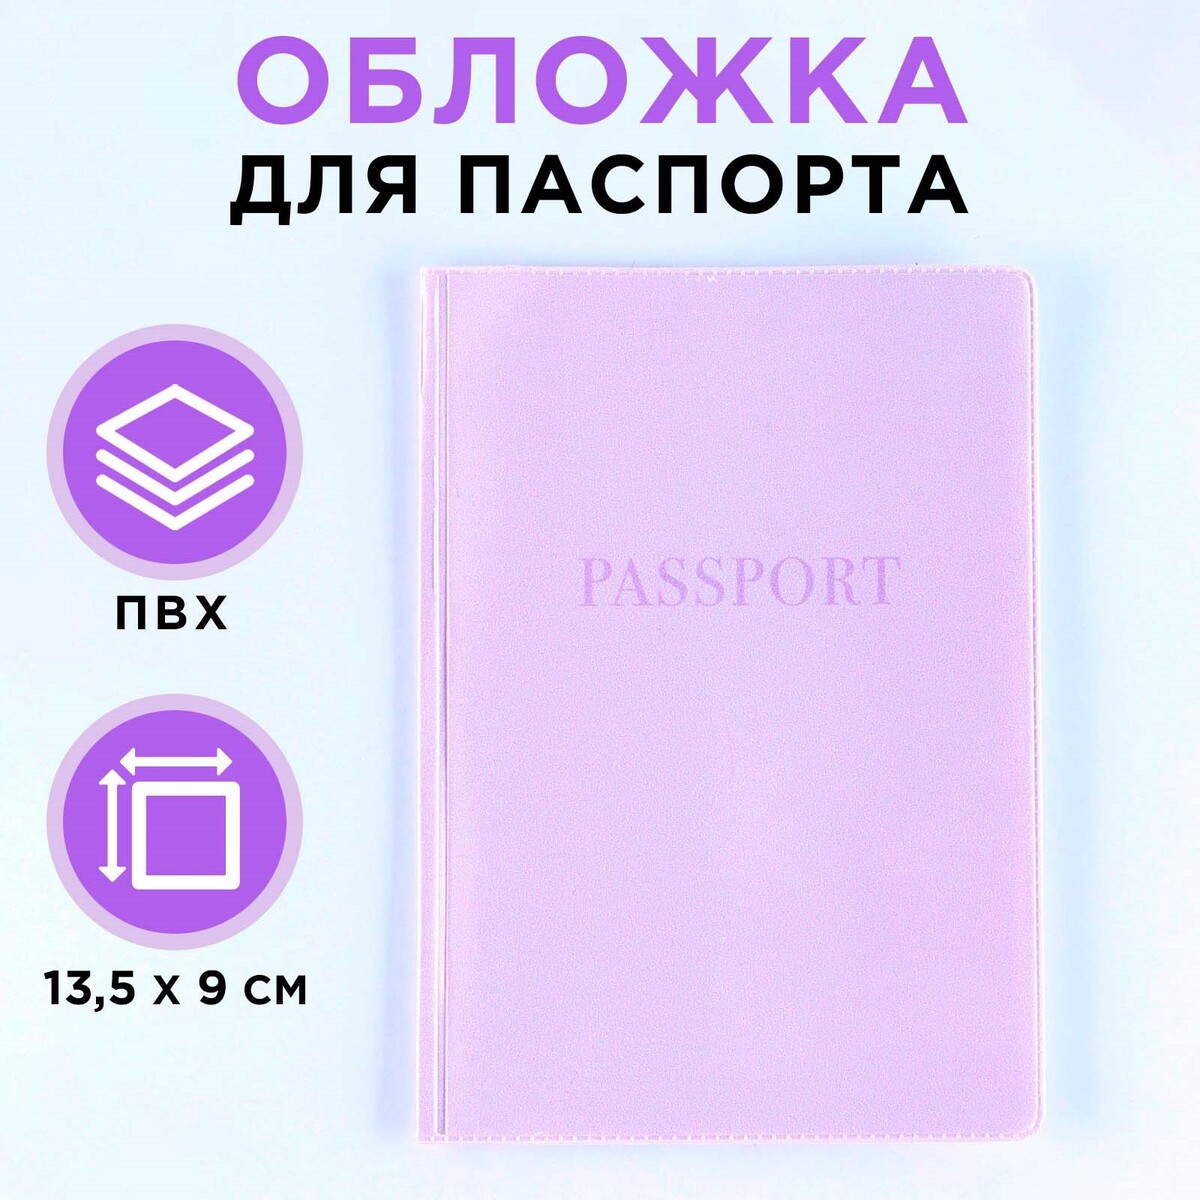 Обложка для паспорта, пвх, цвет лавандовый